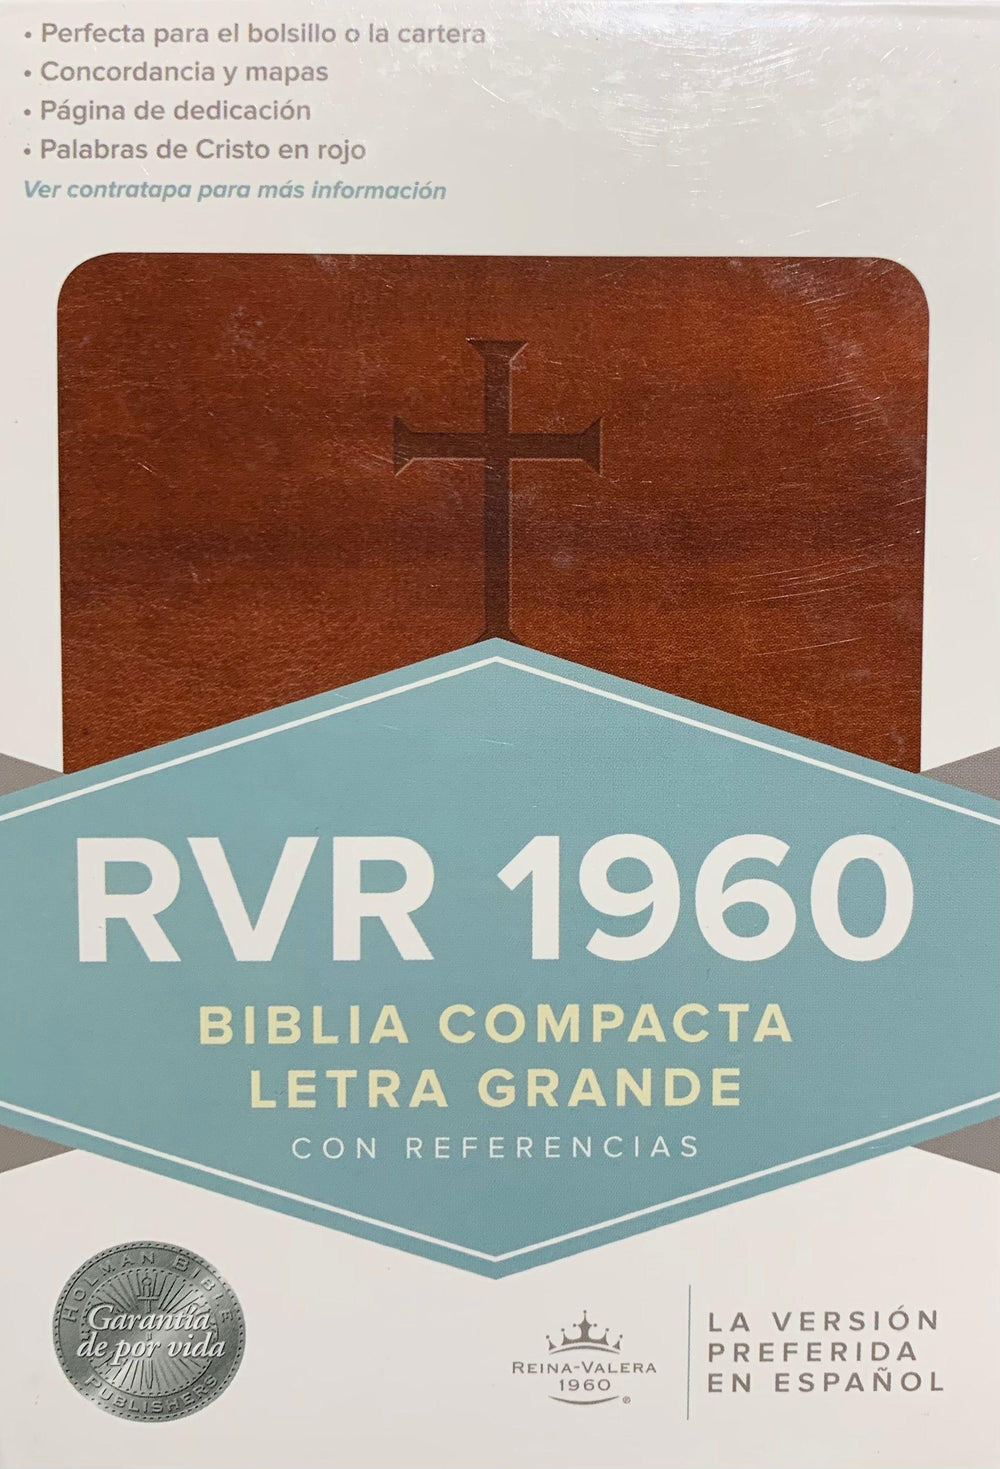 Santa Biblia Compacta - Pura Vida Books